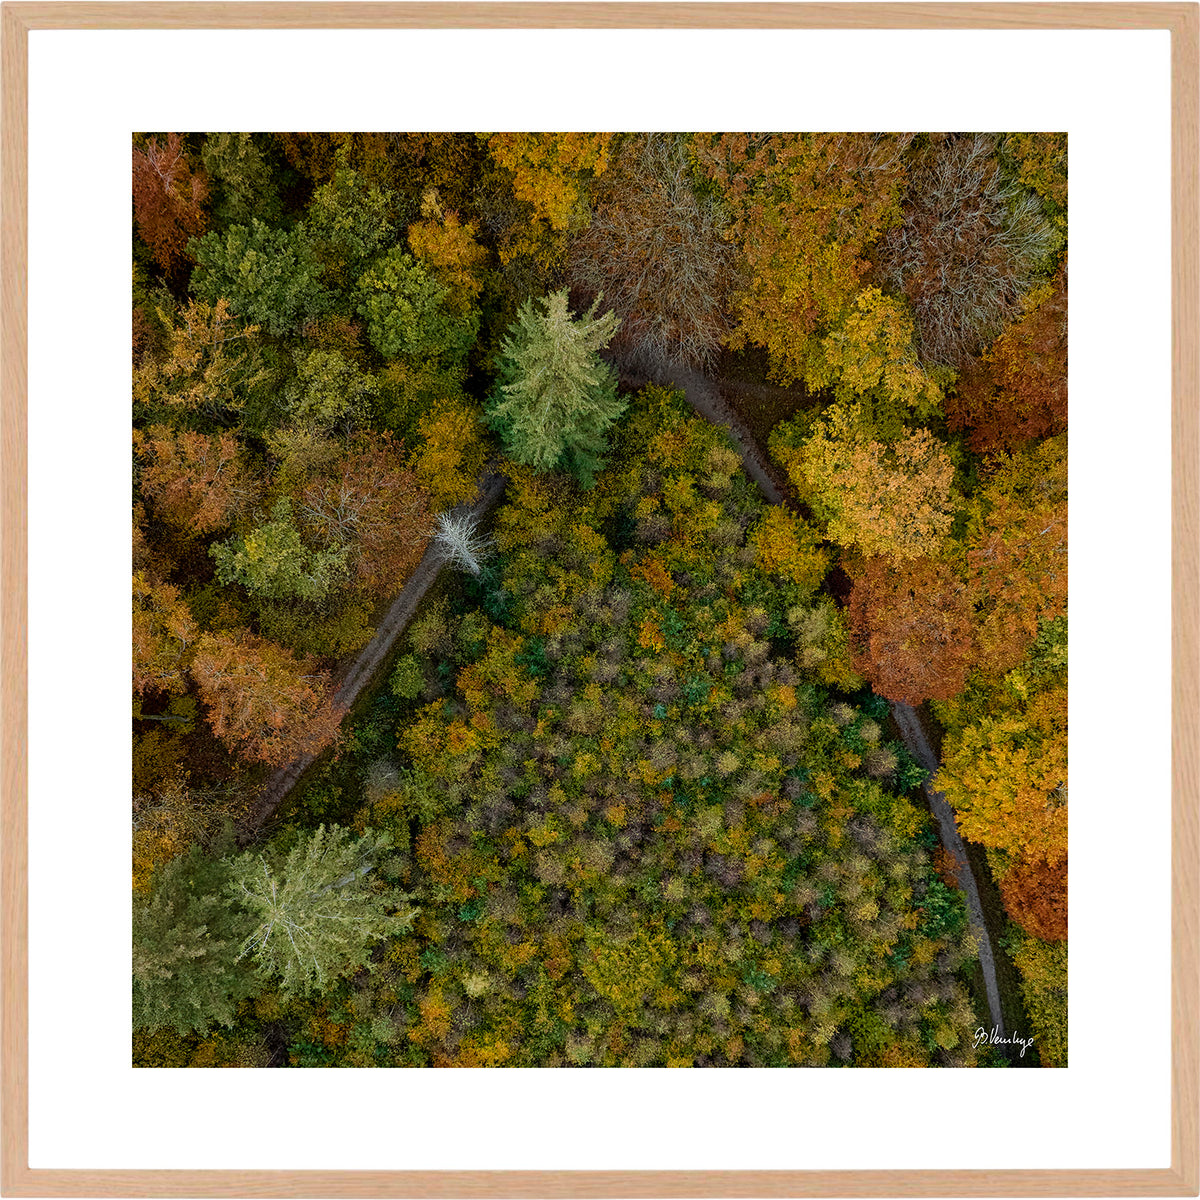 Efterårsfarver i Marselisborgskoven. Grantræer danner en trekant, og omringes af andre træsorter.